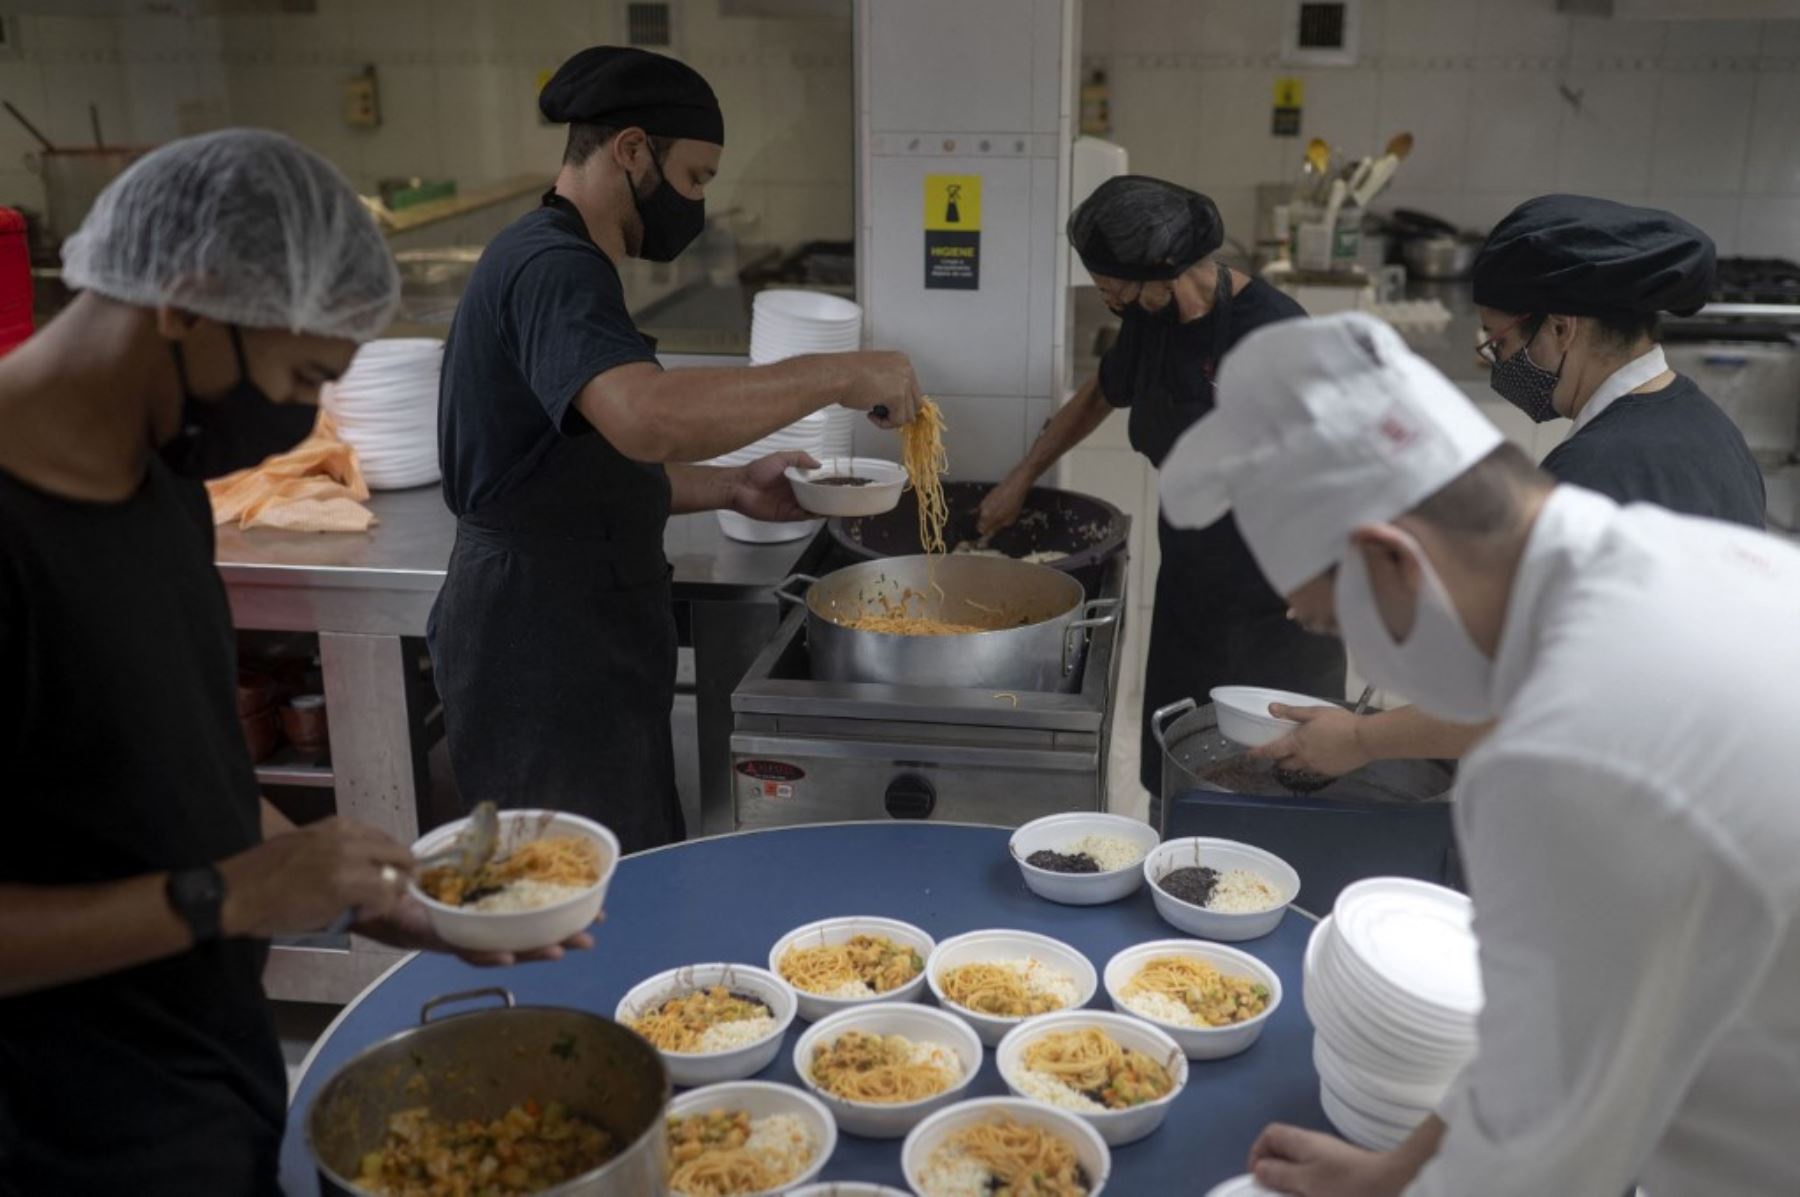 Voluntarios del proyecto Covid Sem Fome (Covid Sin Hambre) sirven comidas para personas sin hogar dentro de la cocina profesional de la Universidad Augusto Motta (UNISUAM) en el barrio Bonsucesso, norte de Río de Janeiro, Brasil. Foto: AFP